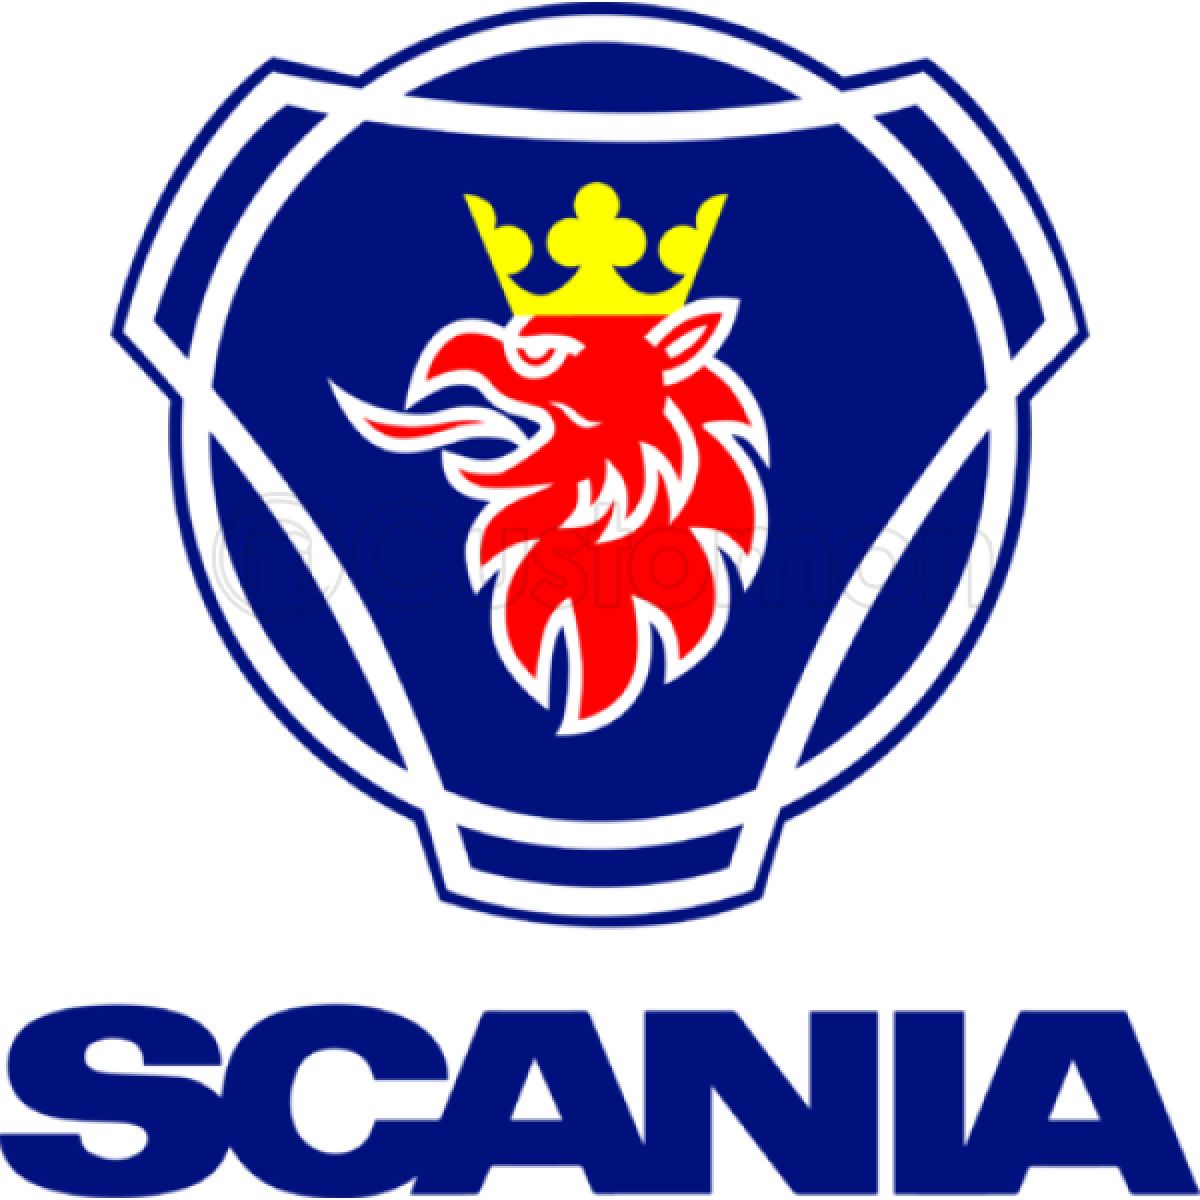 Scania эмблема. Герб Скания. Скания логотип вектор. Надпись Скания.